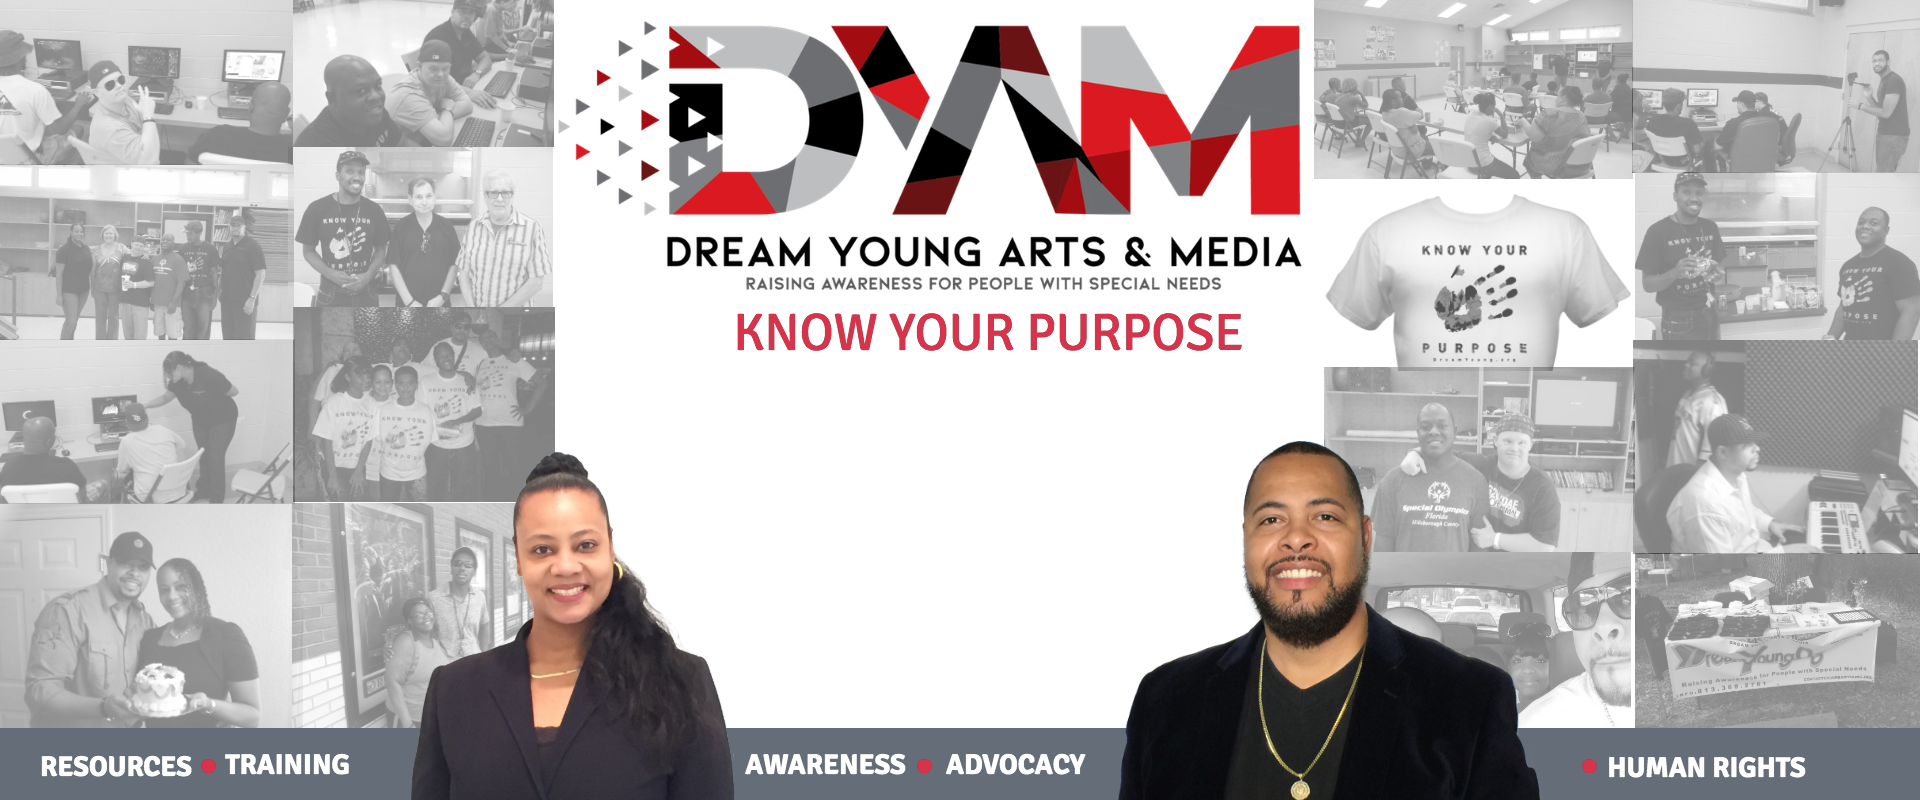 Dream Young Arts & Media